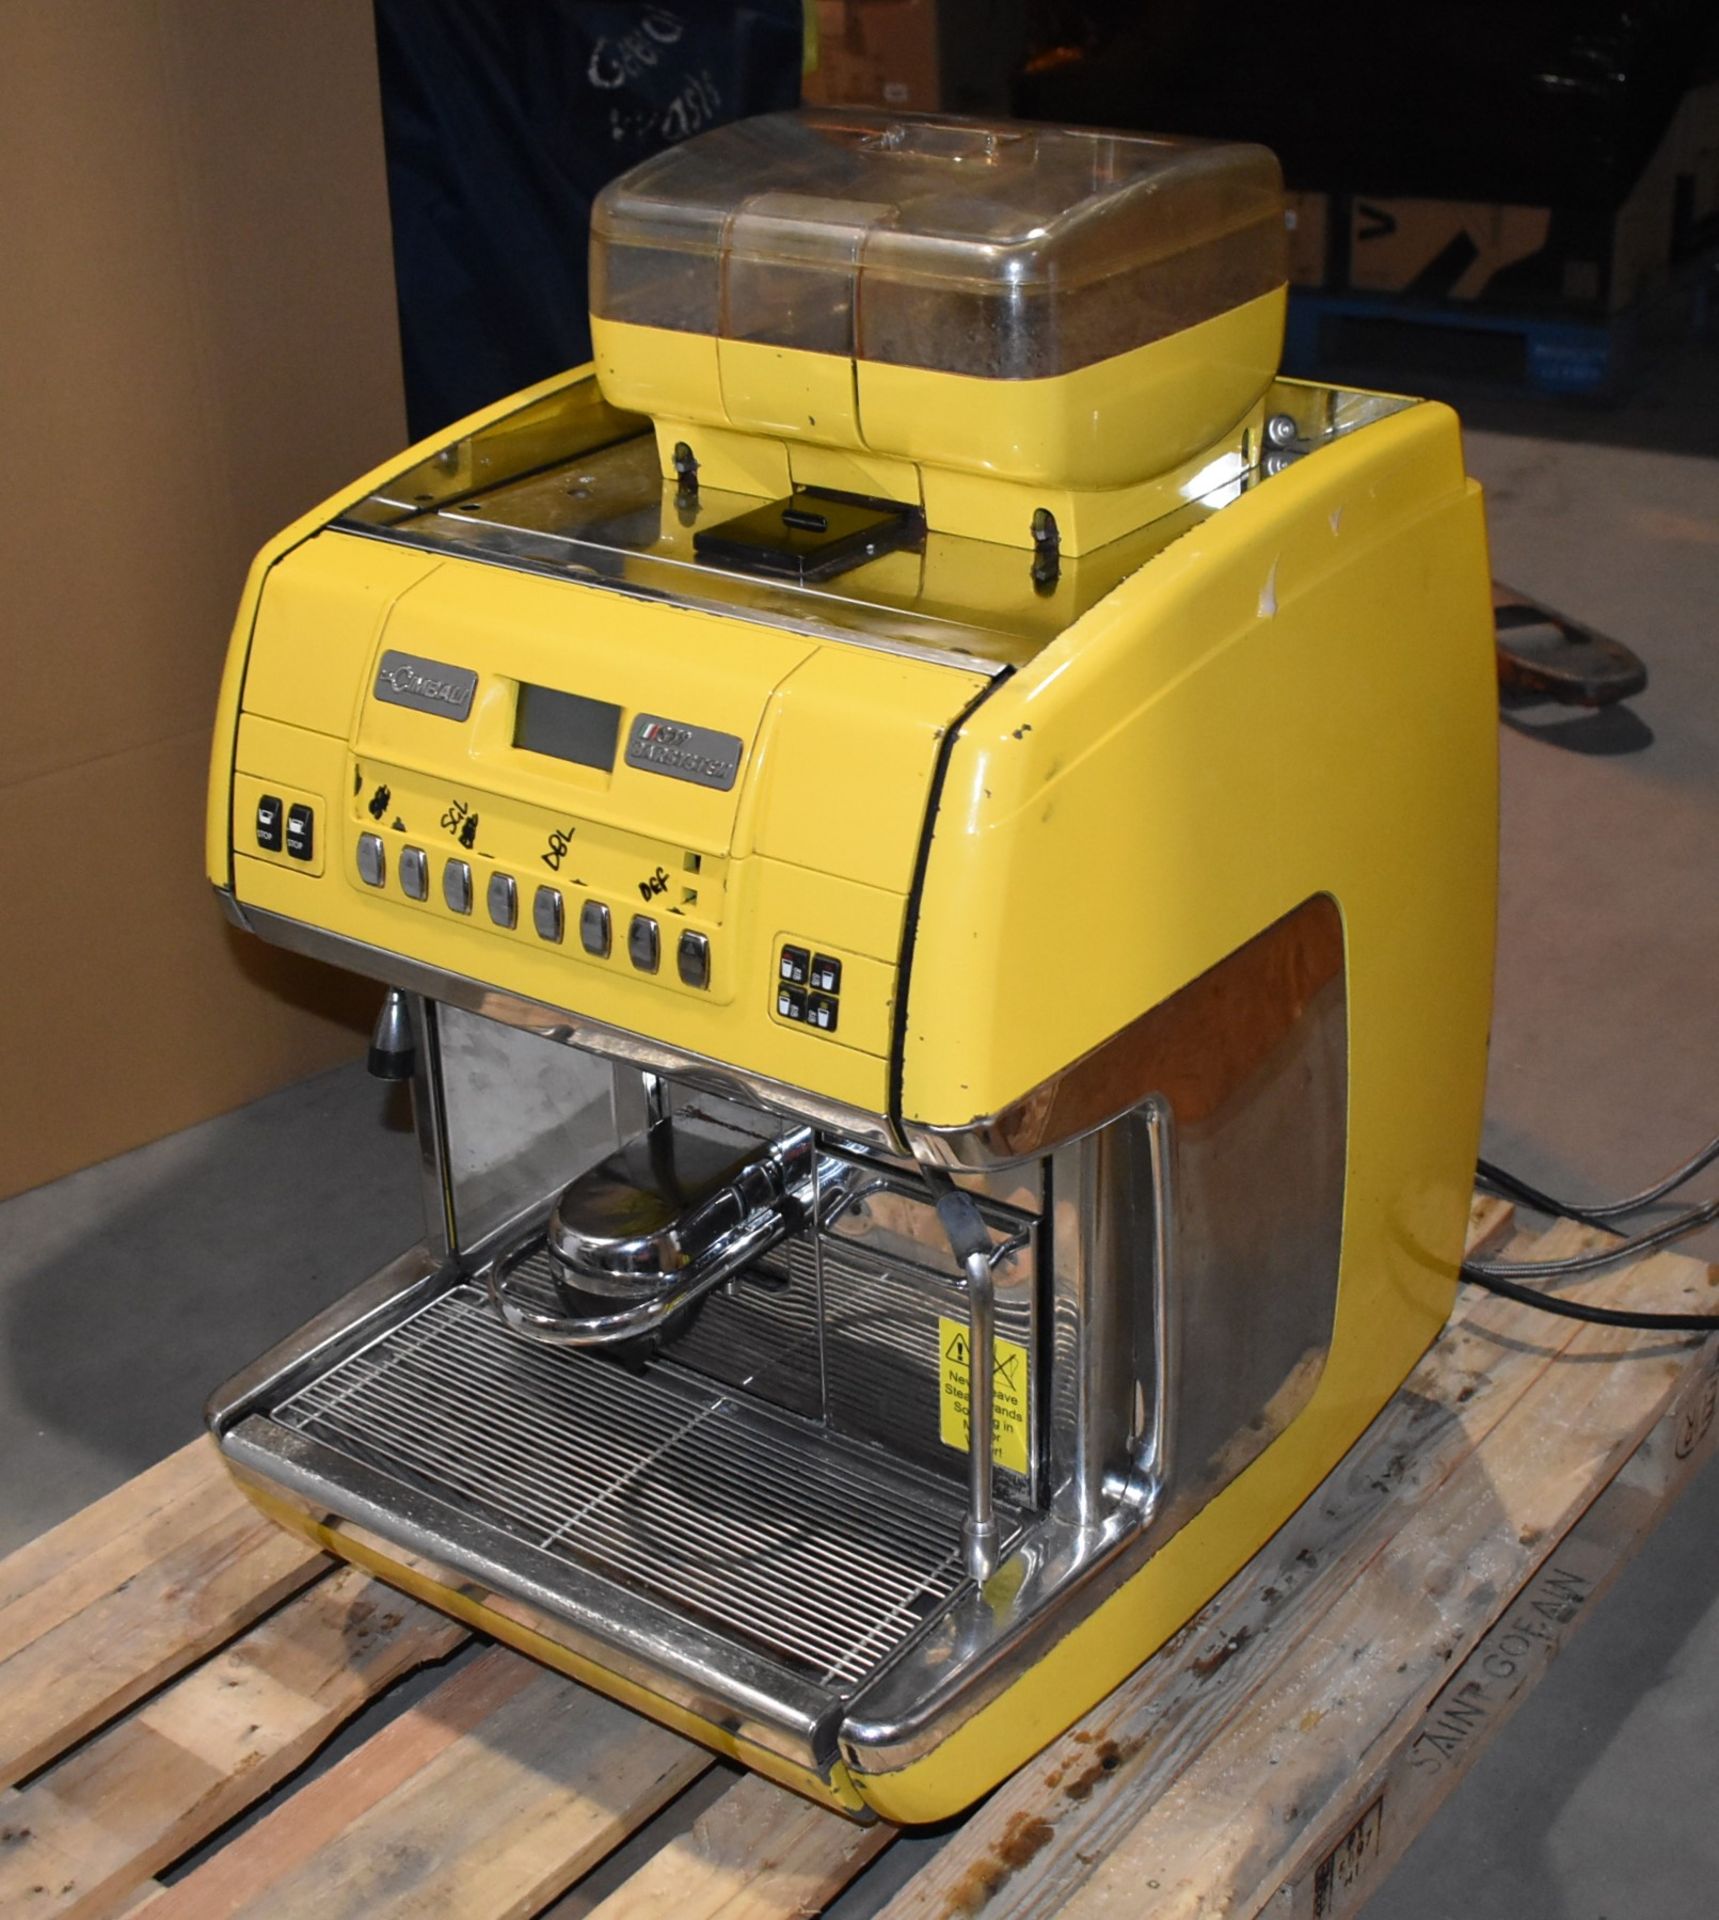 1 x La Cimbali S39 Barsystem Espresso Bean to Cup Coffee Machine - Bright Yellow Finish - 240V Plug